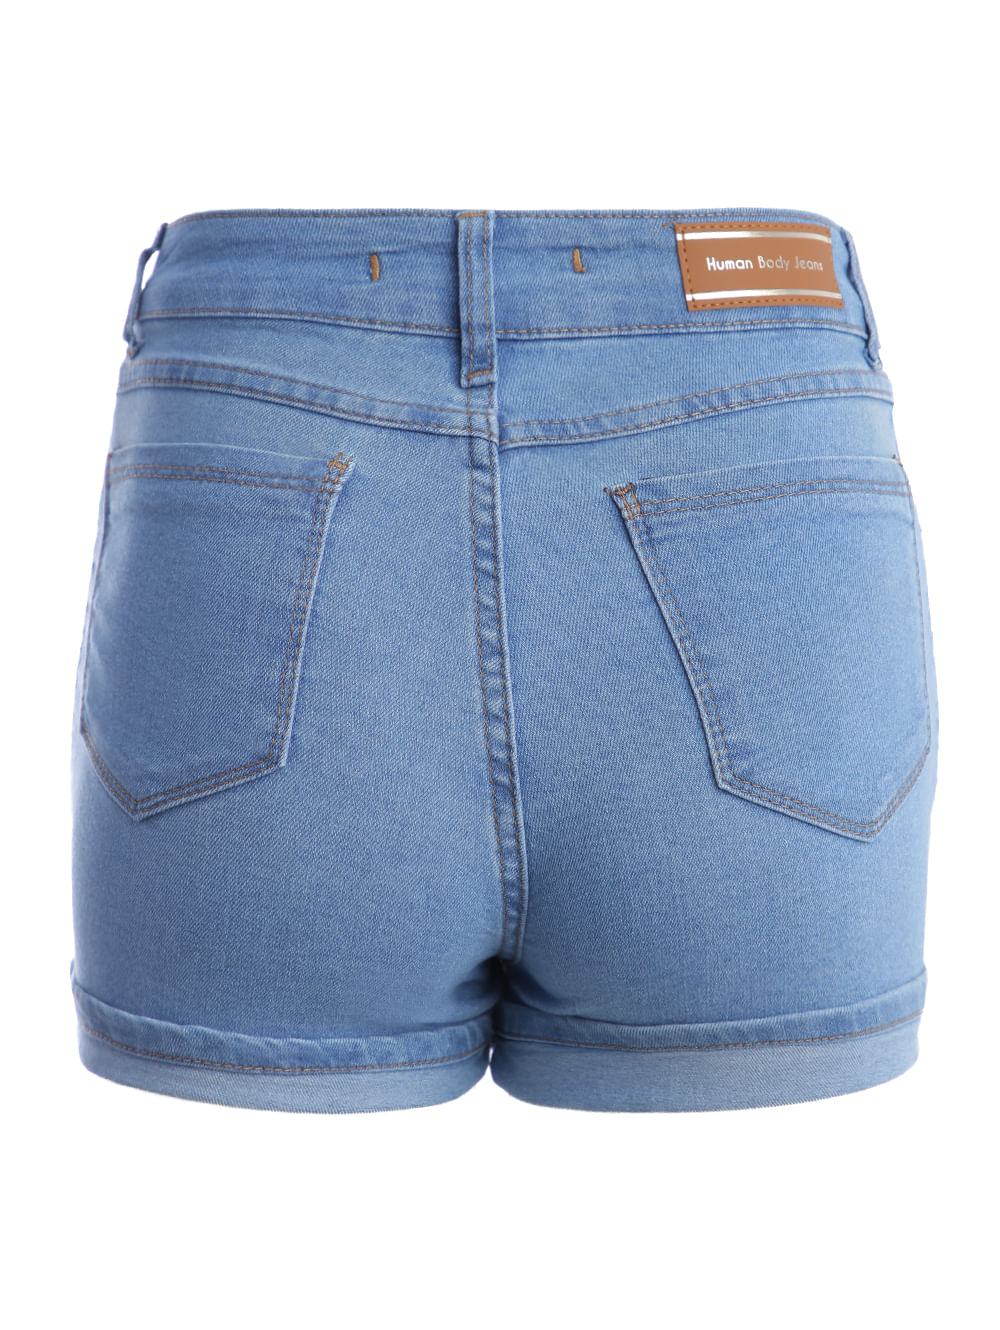 Preços baixos em Shorts Jeans Azul sem marca para mulheres